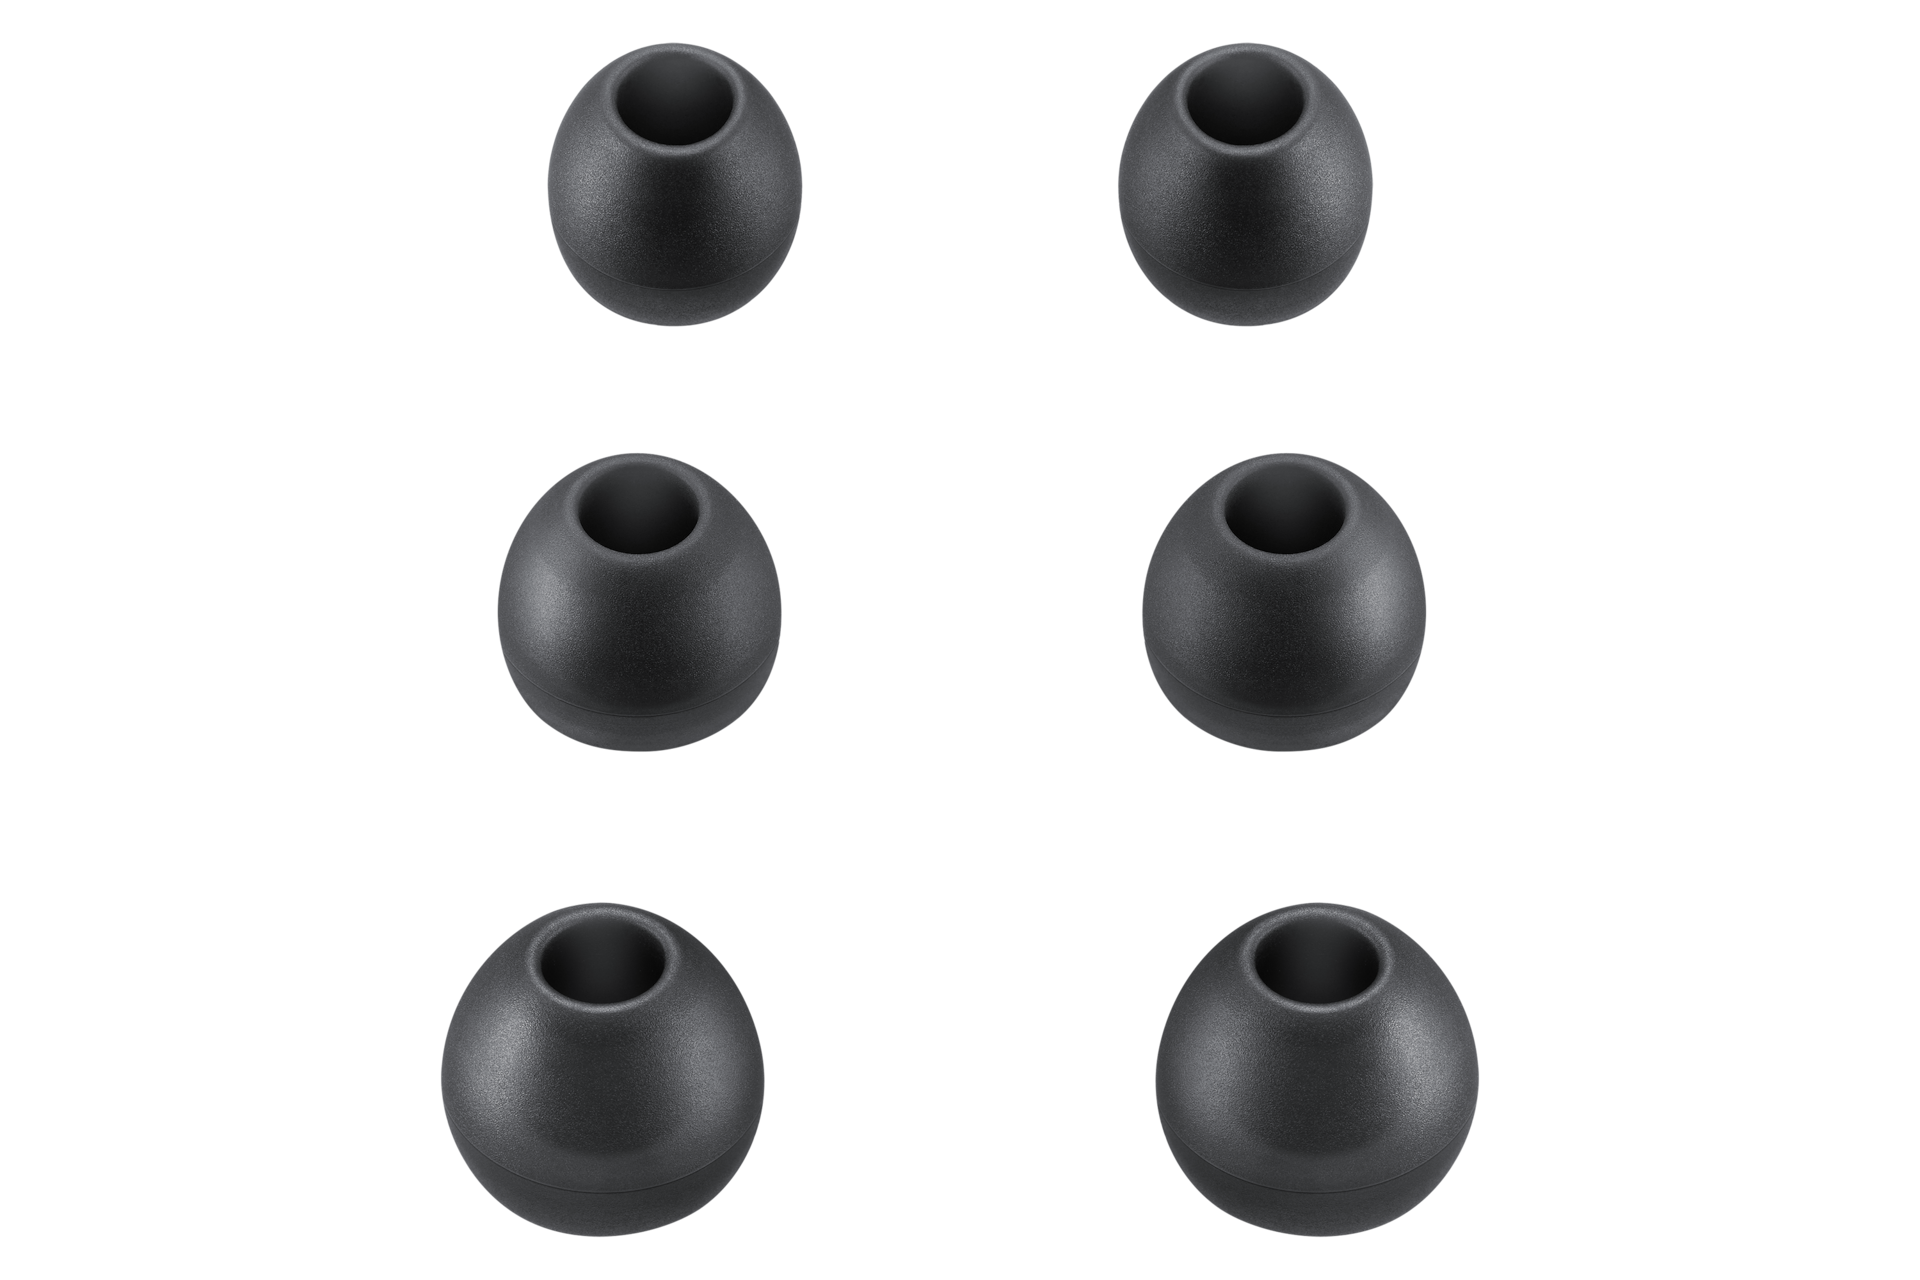 3.5 mm 이어폰 (블랙) 제품 크기 별 3가지  종류의 이어캡 이미지 